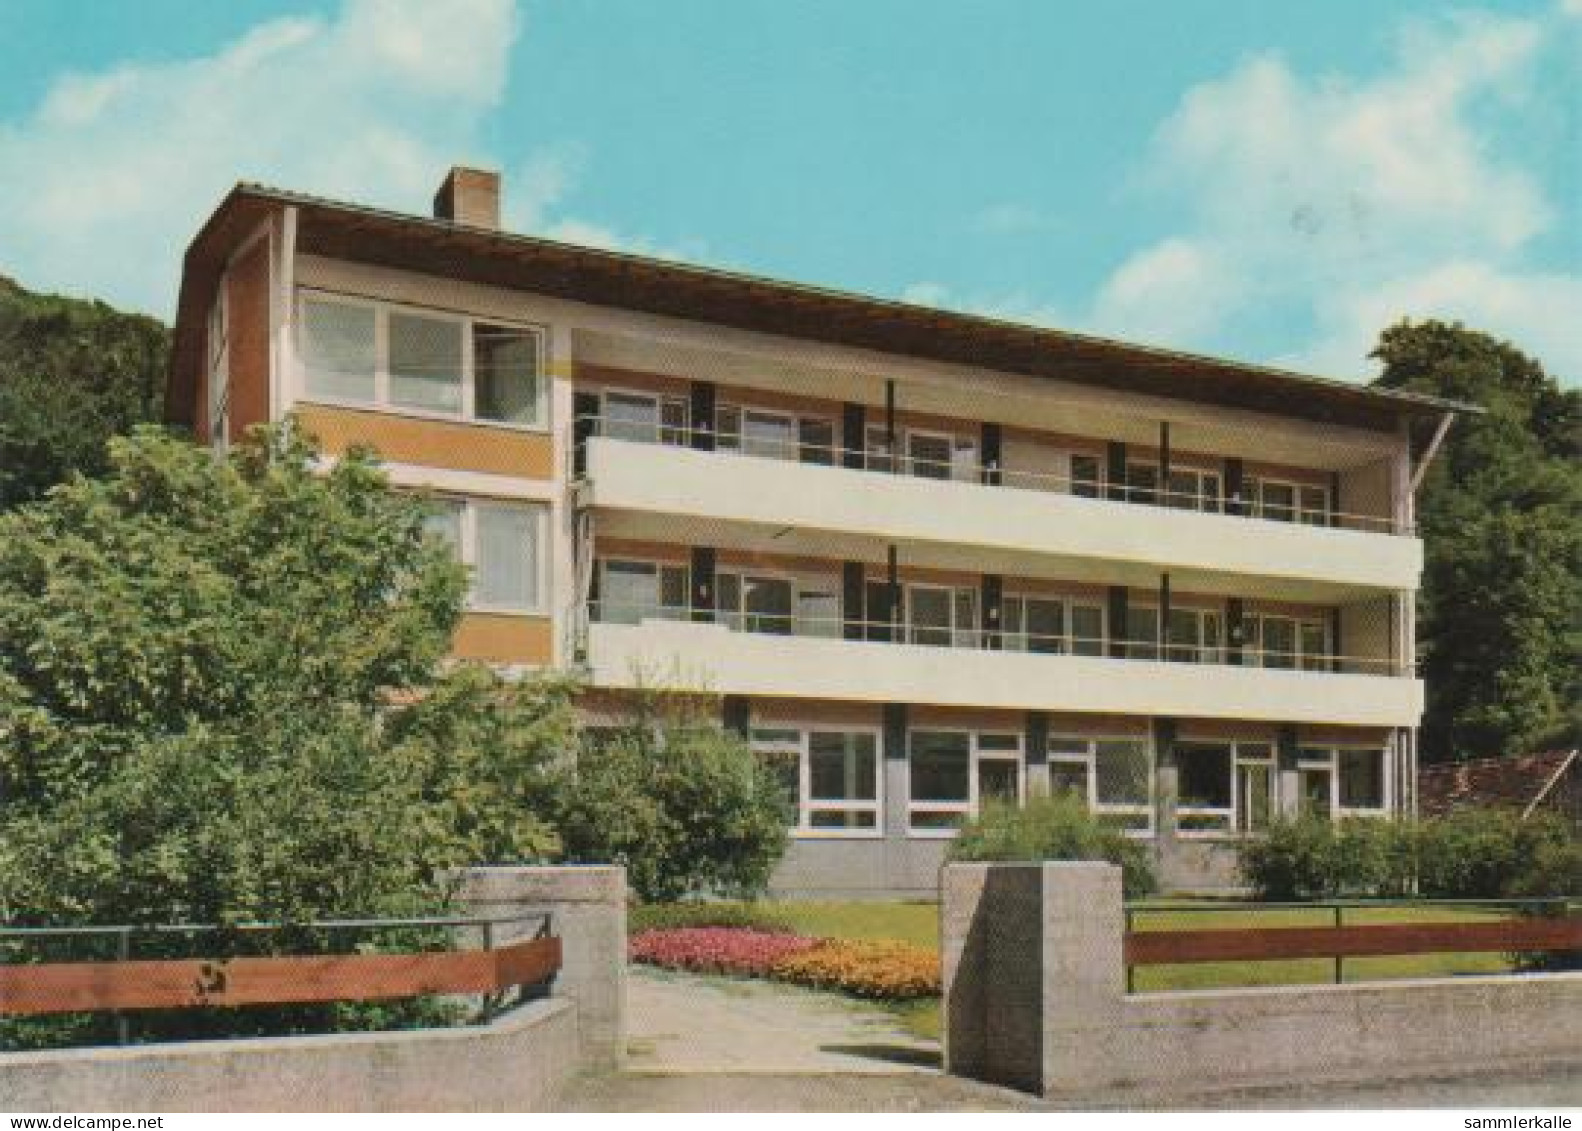 1163 - Bad Ditzenbach - Haus Hiltenburg Und St. Raphael - 1985 - Goeppingen